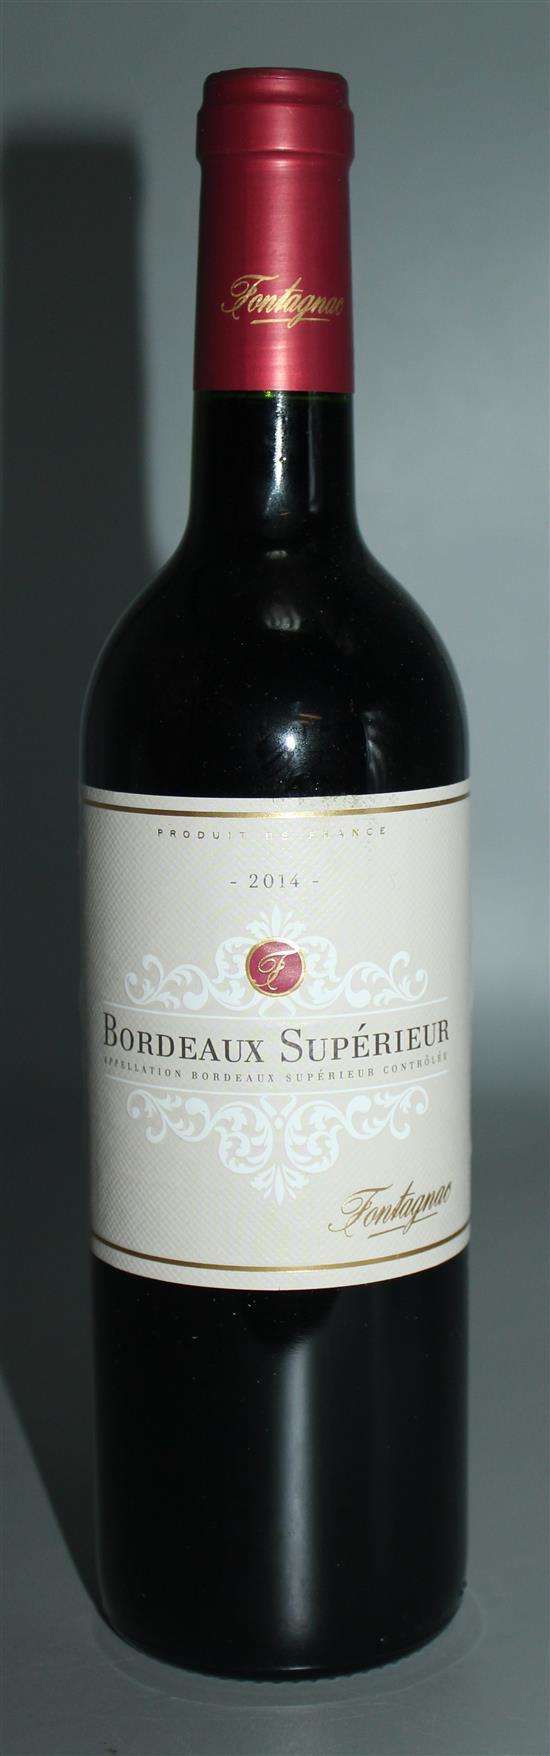 6 bottles of Superieur Bordeaux